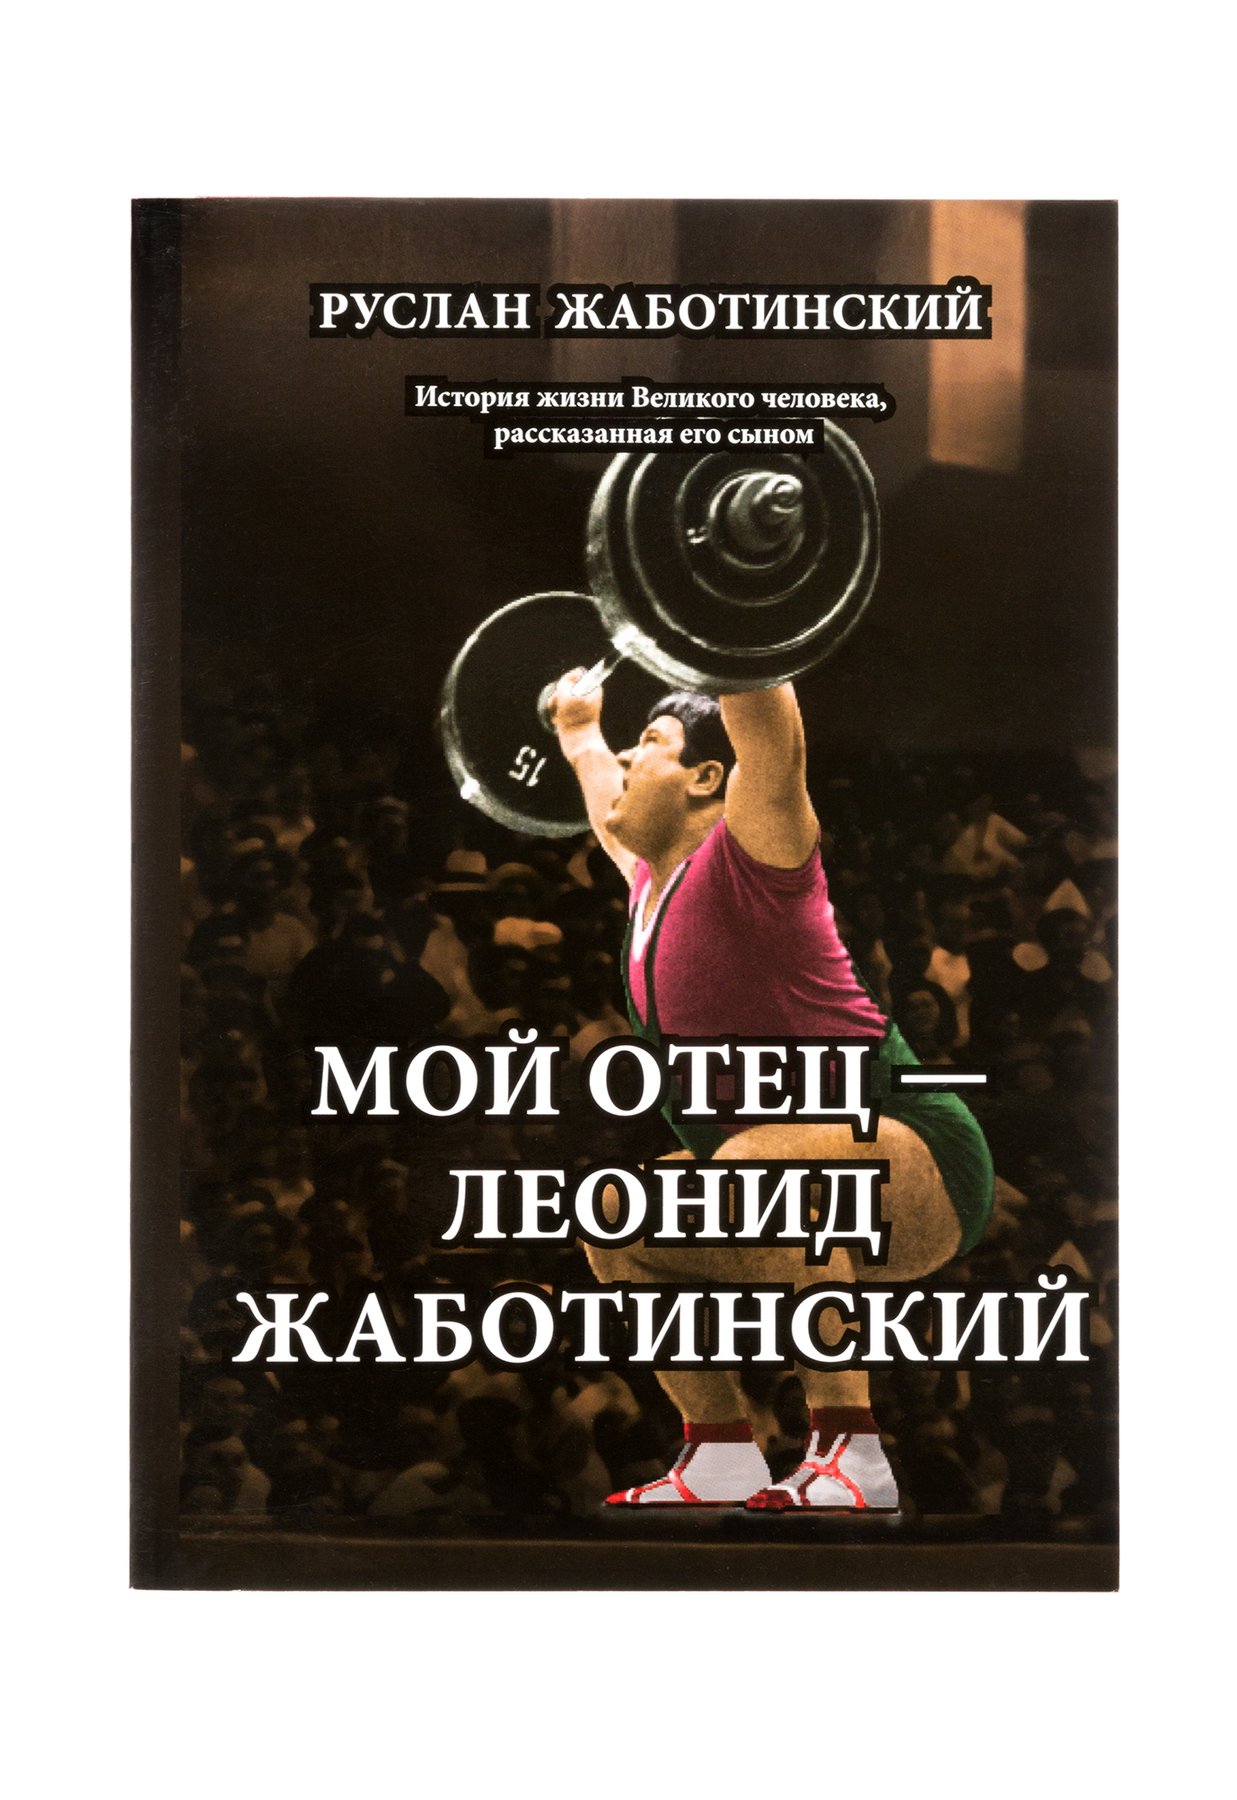 Книга Мой отец Леонид Жаботинский - PDF